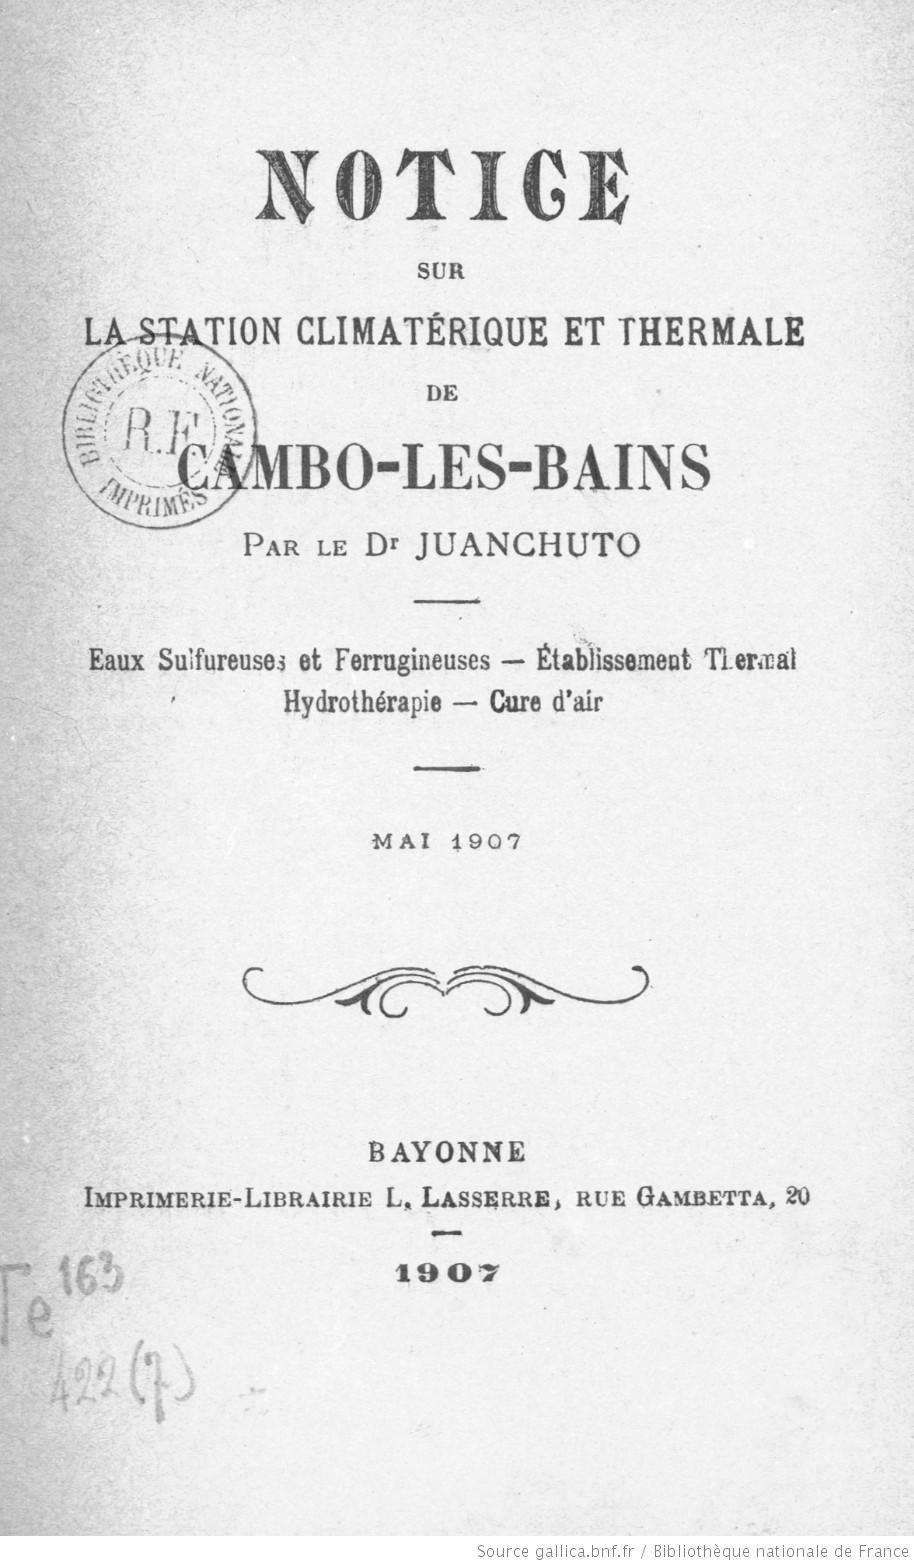 BARCELONA...ISAAC MANUEL FRANCISCO ALBENIZ  Y PASCUAL, CATALÁN DE CAMPRODÓN 29 DE MAYO 1860... FRACMASÓN..1860-1909...5-07-2013...